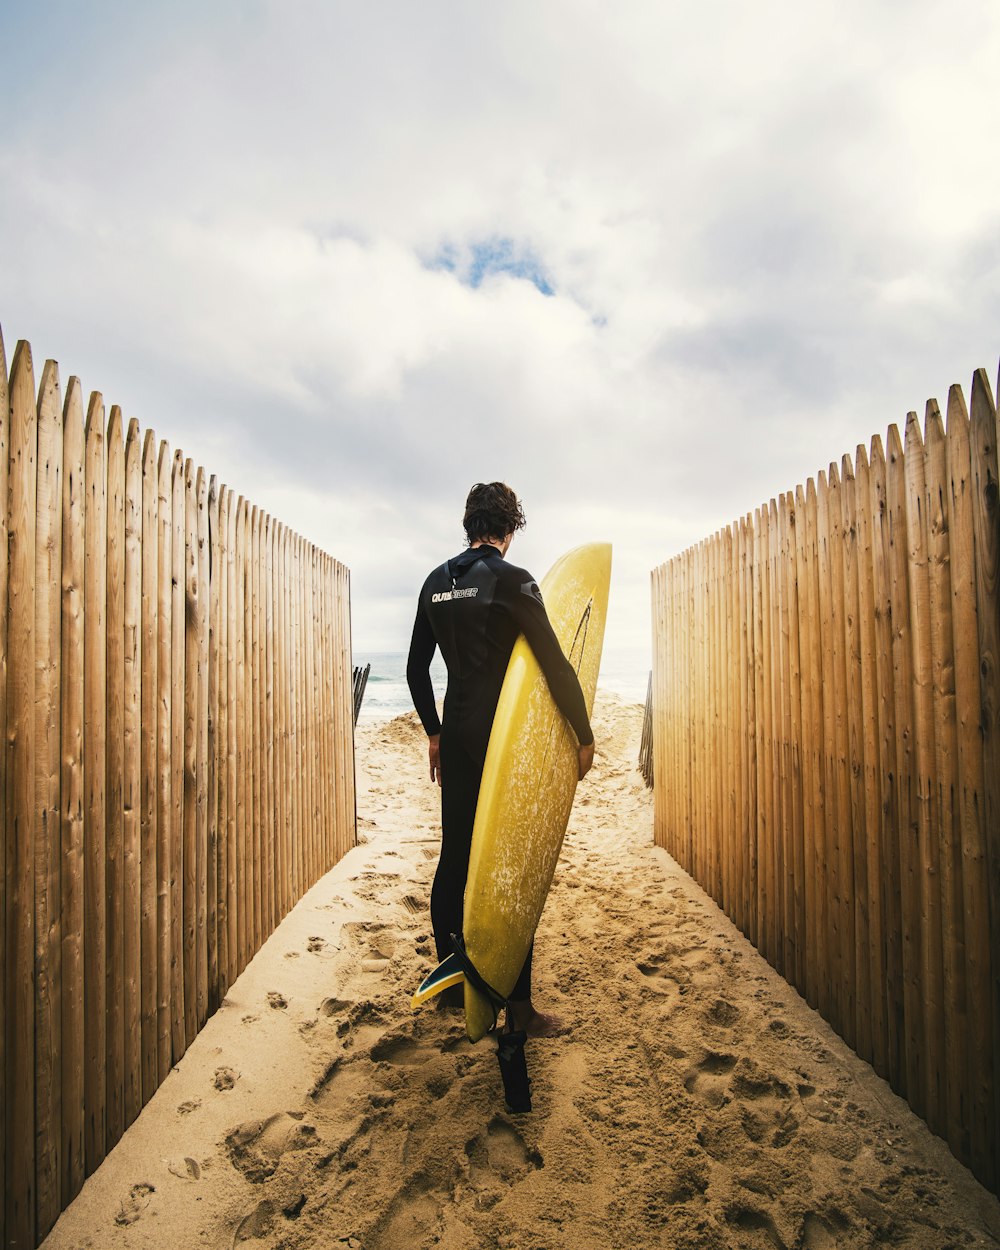 pessoa em pé entre cercas de privacidade enquanto segura prancha de surf amarela durante o dia